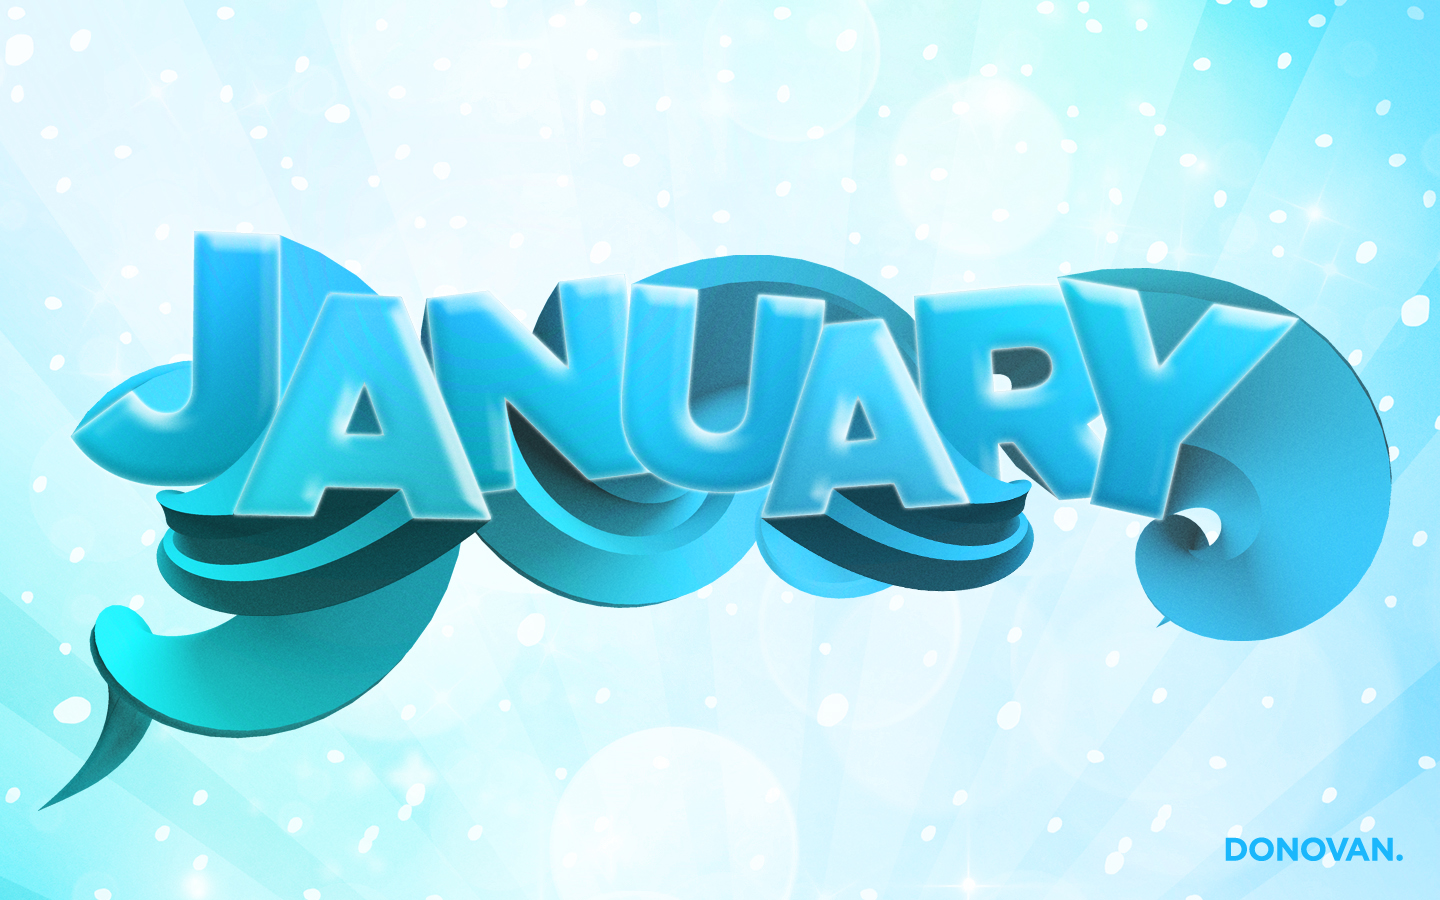 immagini di gennaio sfondo,testo,font,acqua,turchese,blu